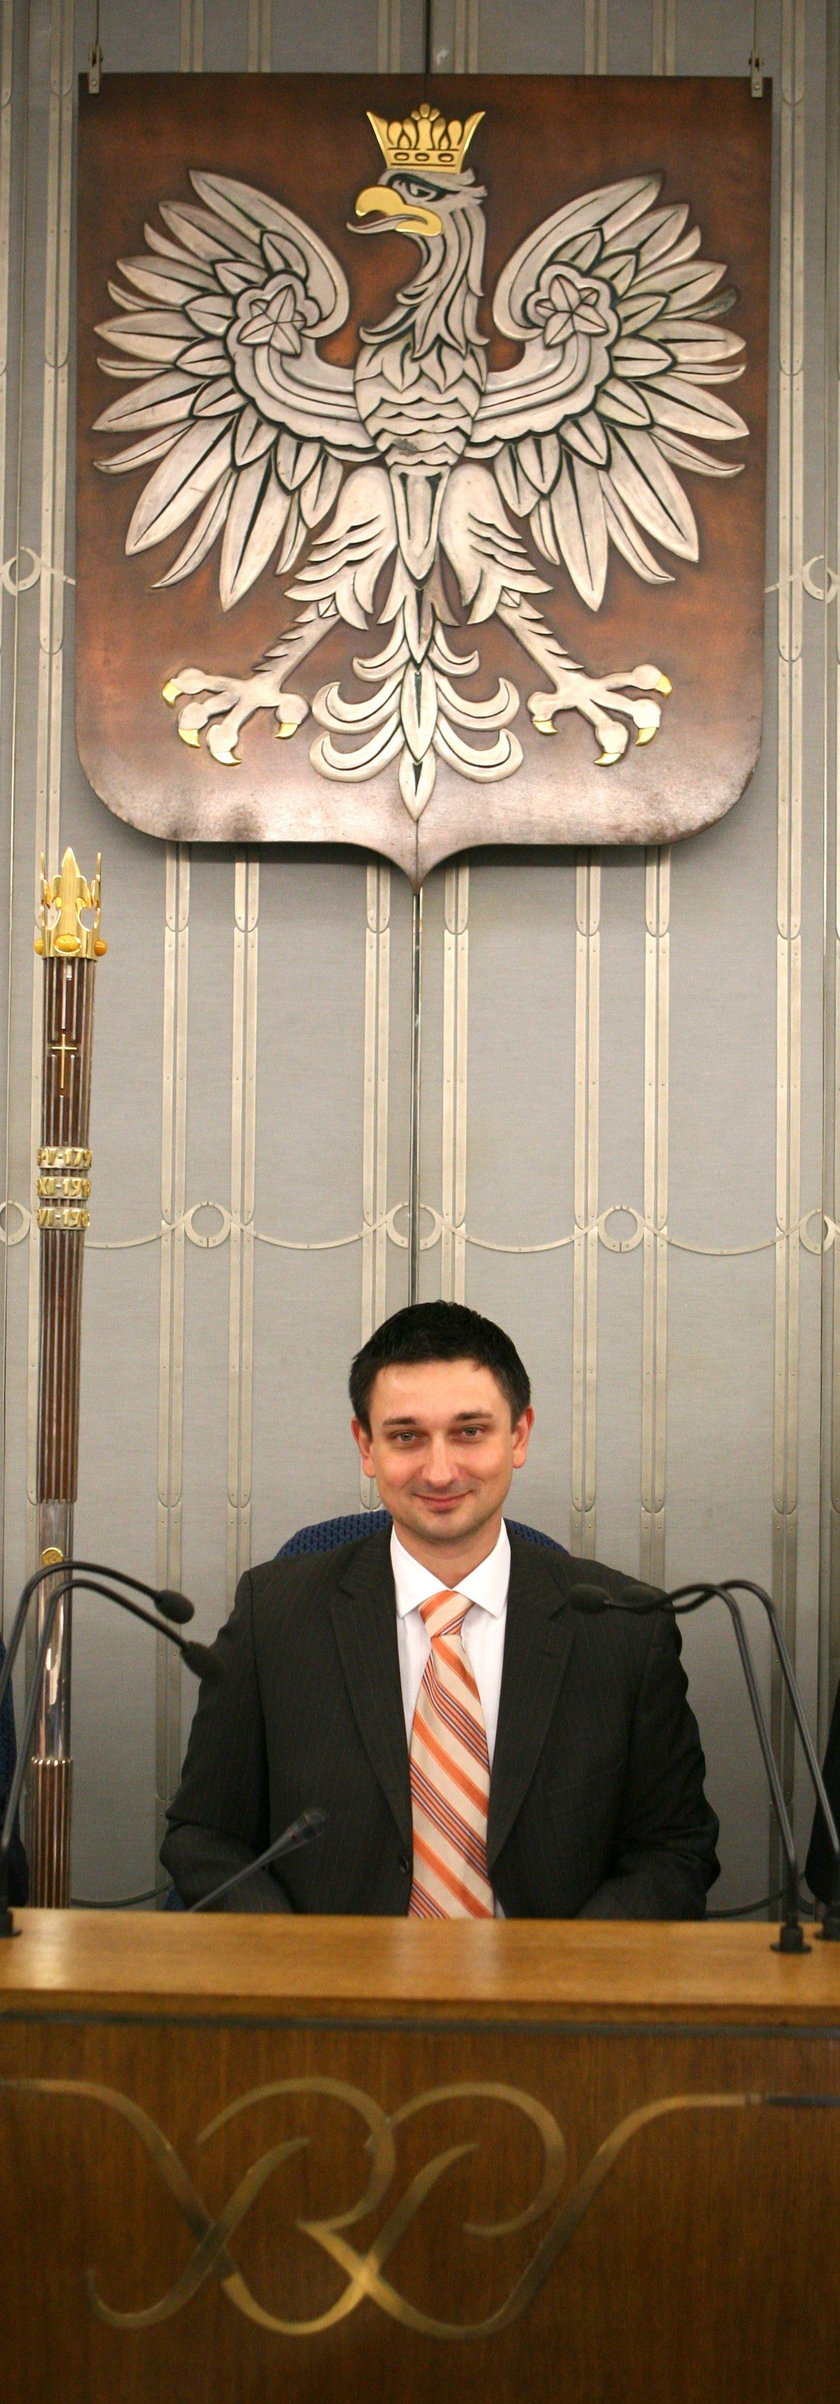 Tomasz Misiak